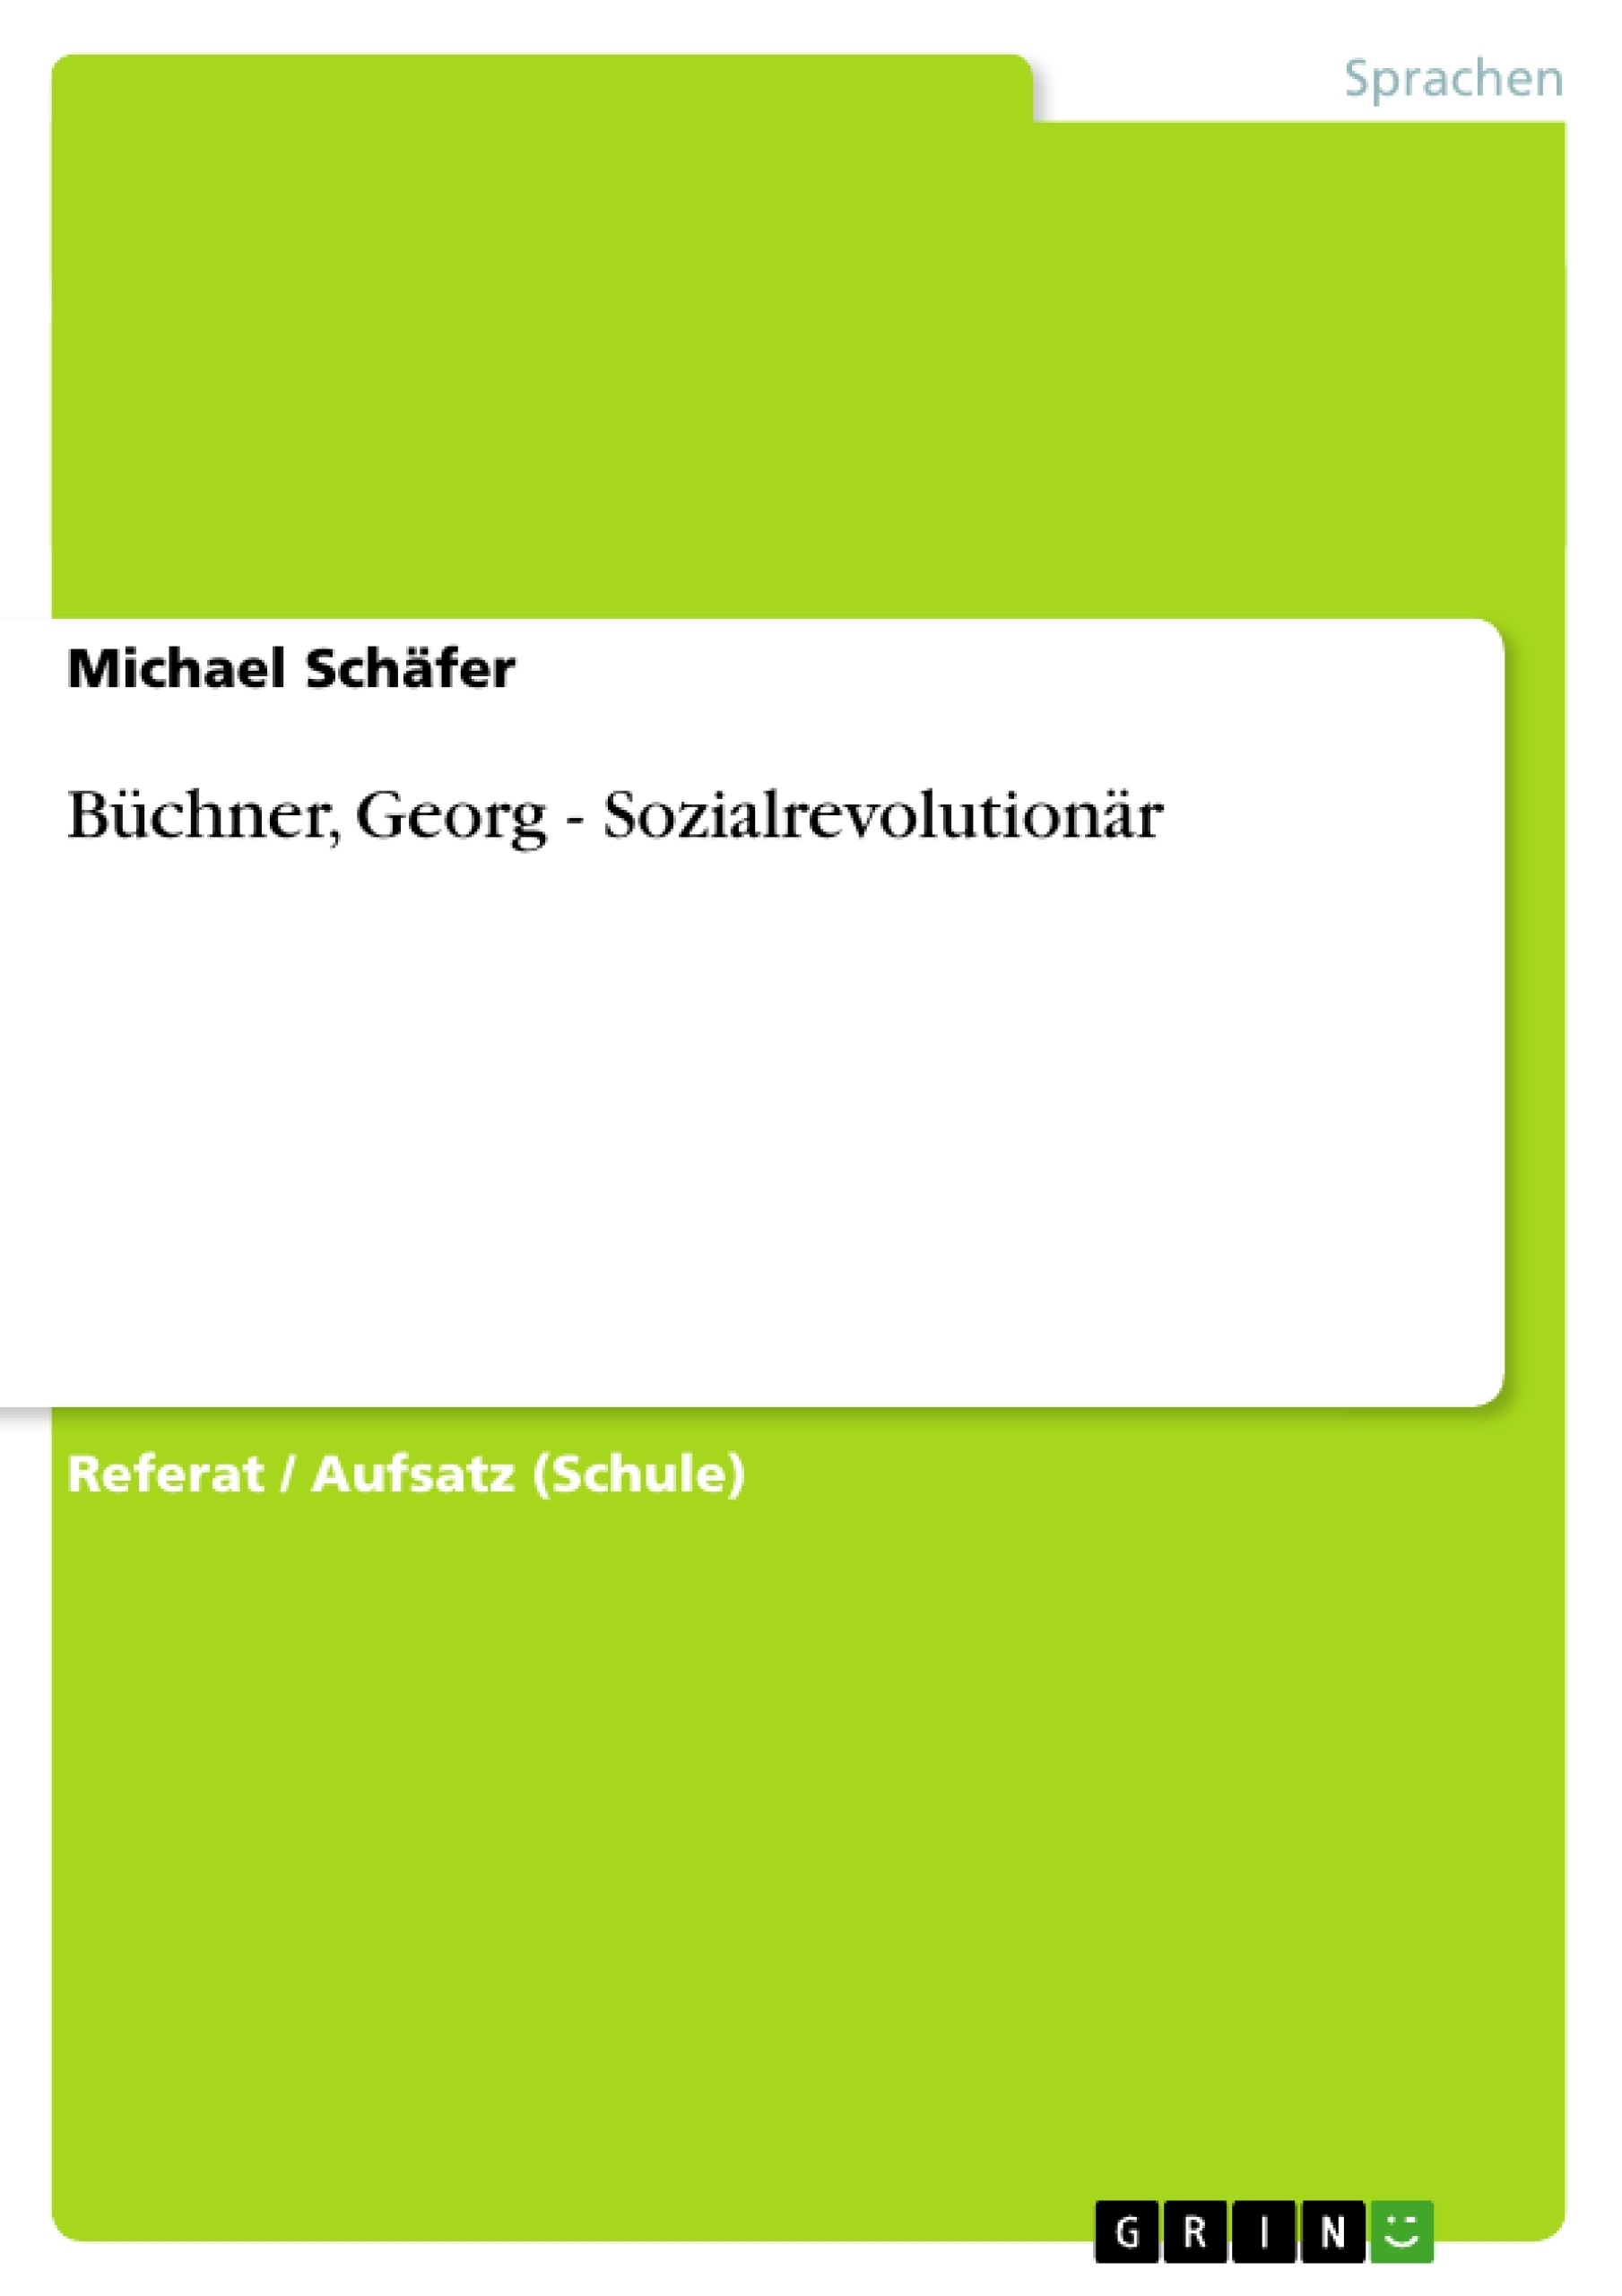 Title: Büchner, Georg - Sozialrevolutionär